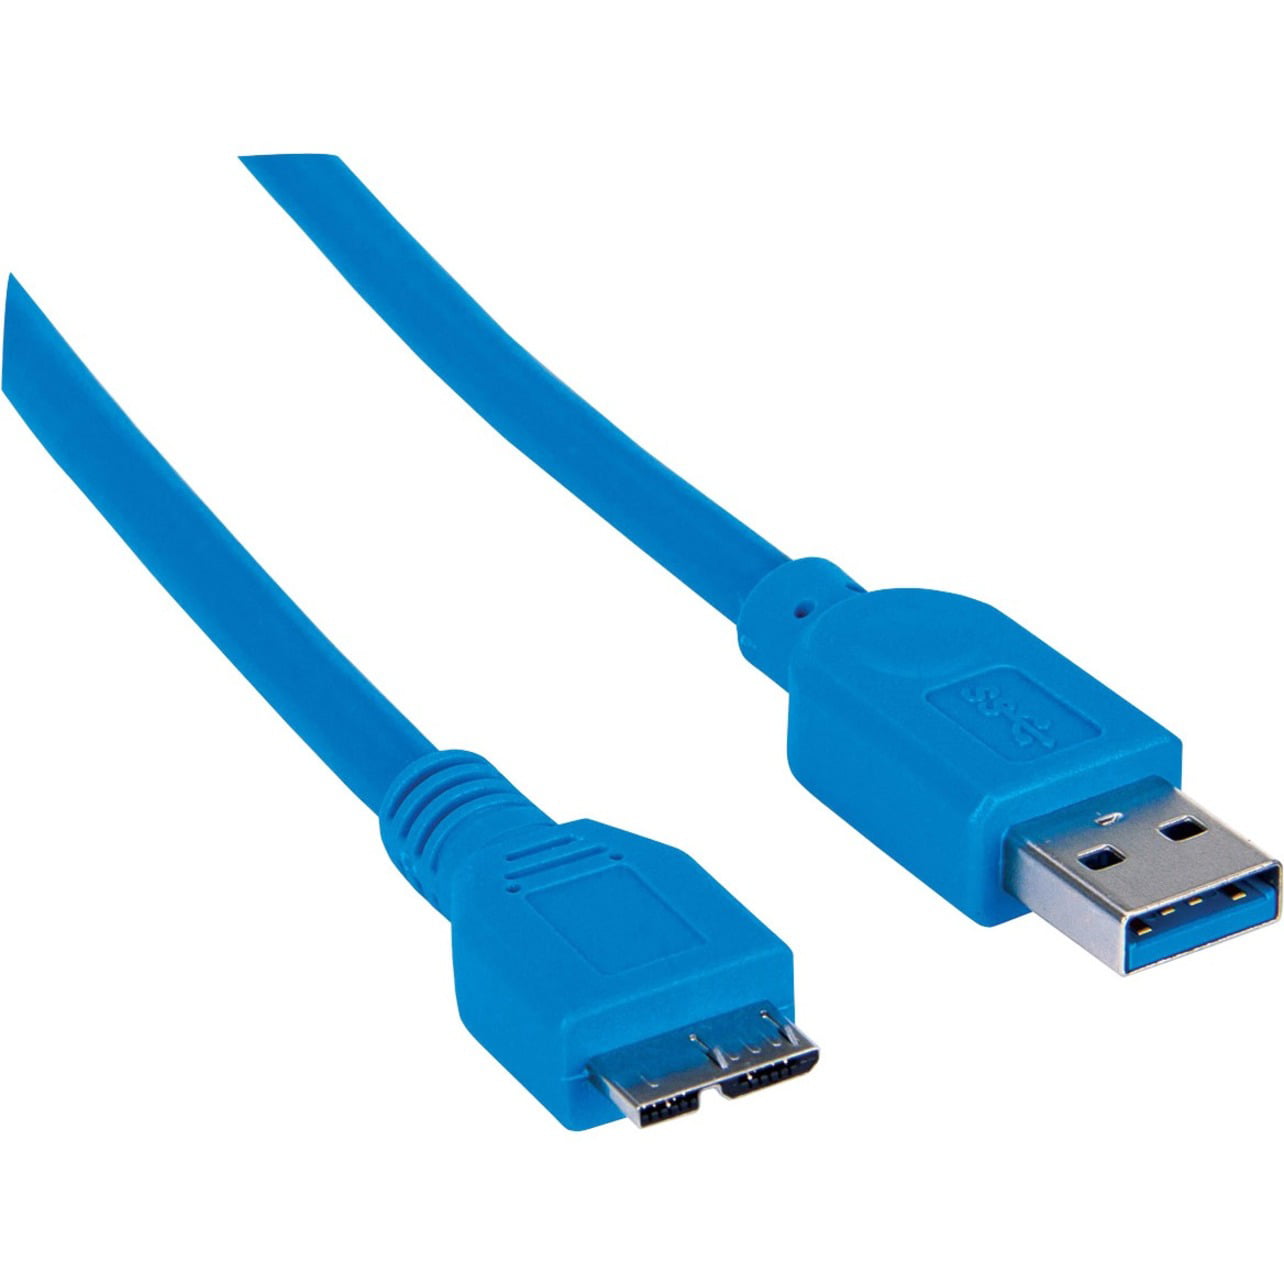 Usb 2.0 usb 3.2 gen1. Кабель USB 3.1 Gen 2. USB 3.2 gen1 Micro-b. Micro b SUPERSPEED USB. Кабель USB 3.0 SUPERSPEED USB 3.0 19 Pin.